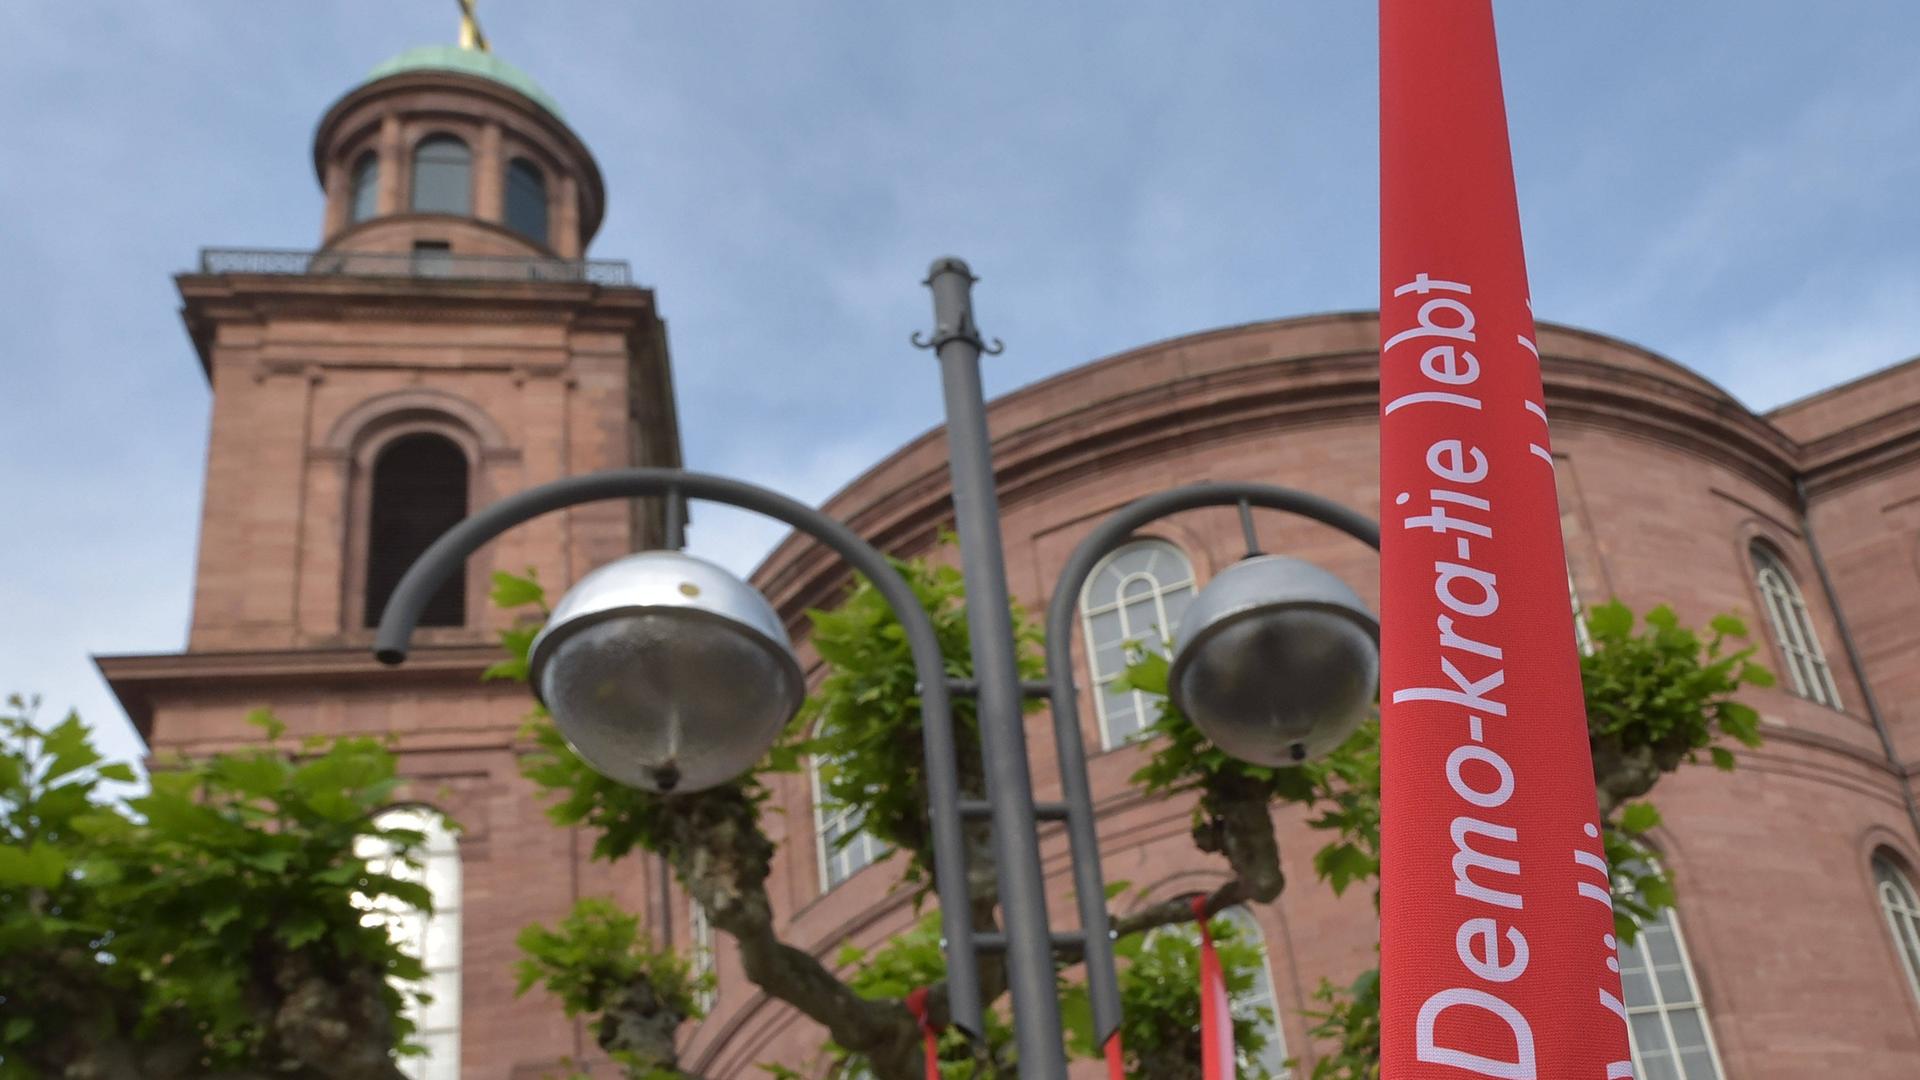 Vor der Frankfurter Paulskirche weht zum Paulskirchenfest 2023, das den 175. Jahrestag der Zusammenkunft der Nationalversammlung in der Paulskirche 1848 feiert, eine Fahne mit der Aufschrift "Demo-kra-tie lebt".